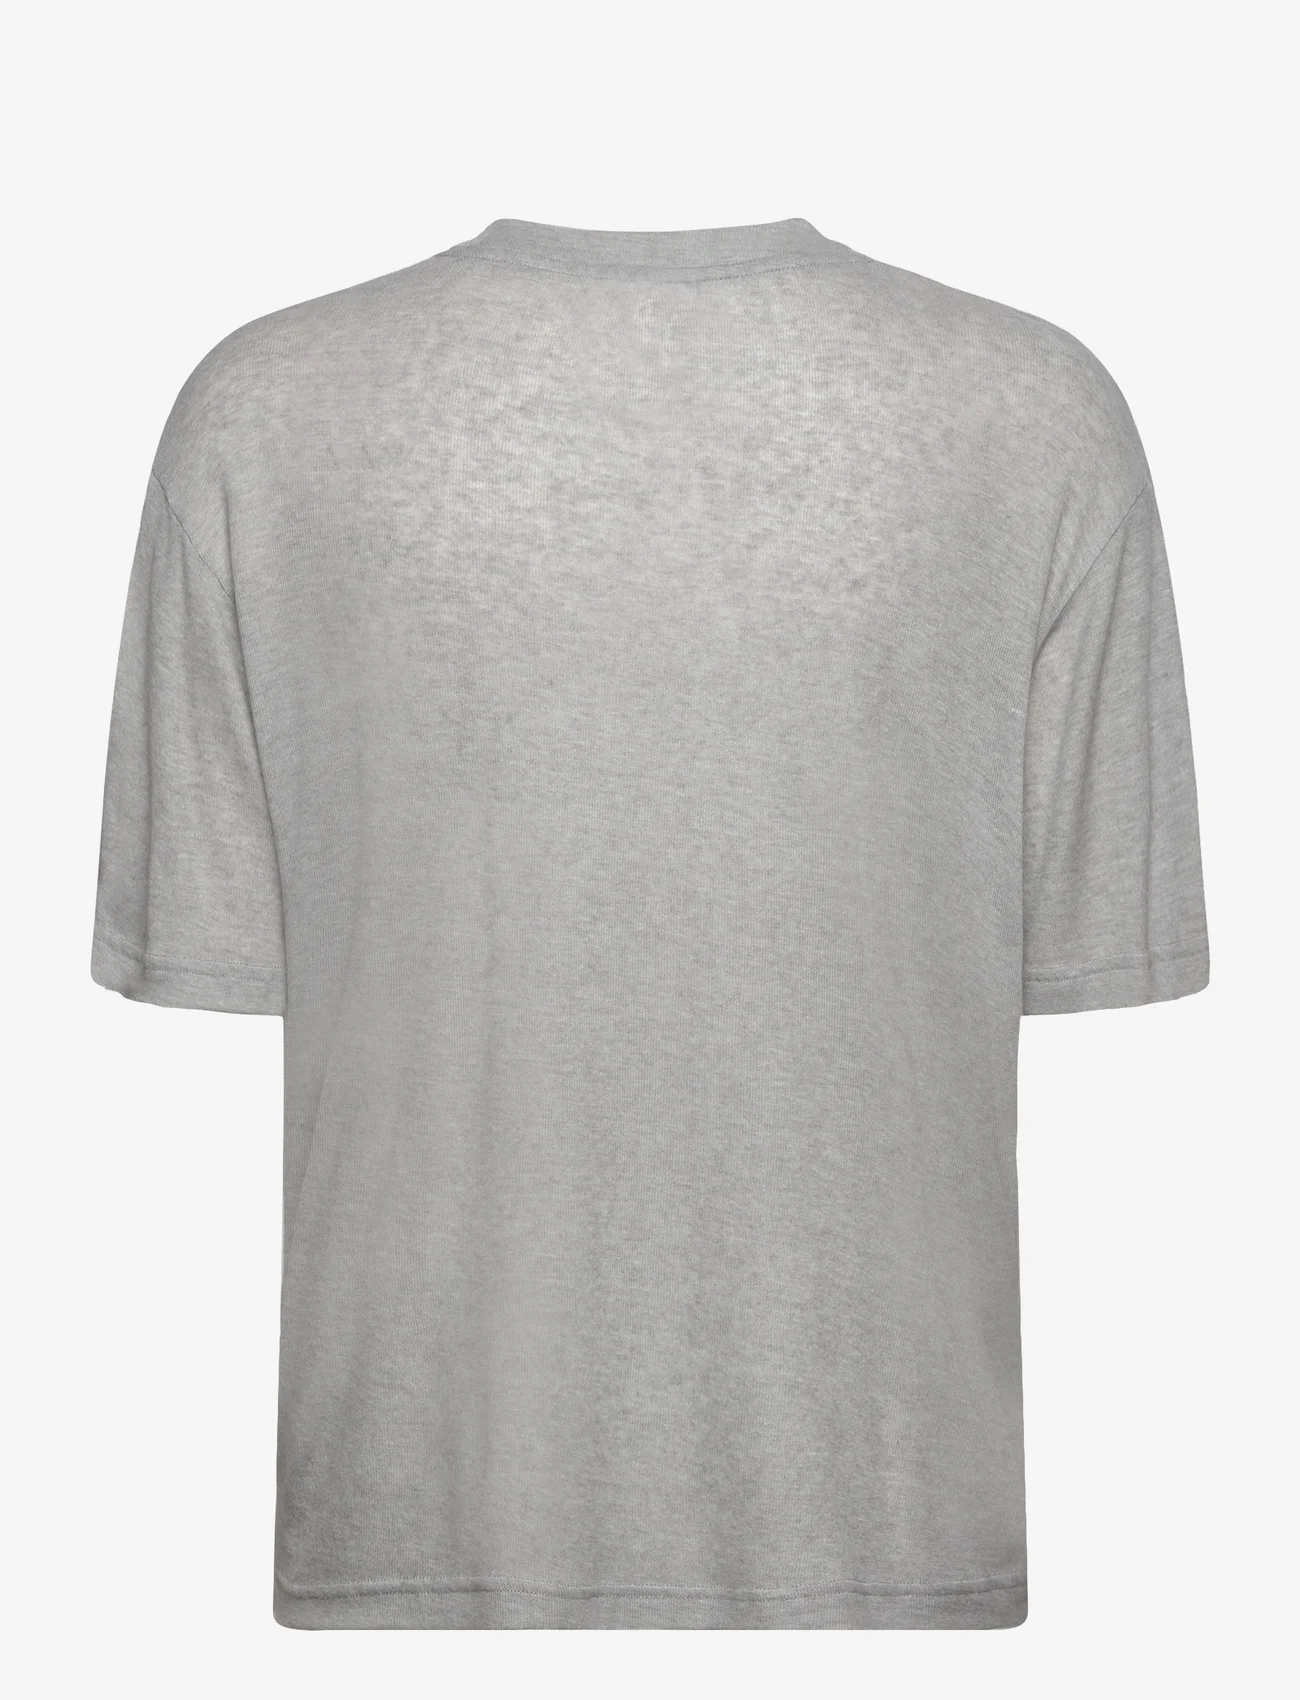 Day Birger et Mikkelsen - Parry - Soft Wool - t-shirty - medium grey melange - 1